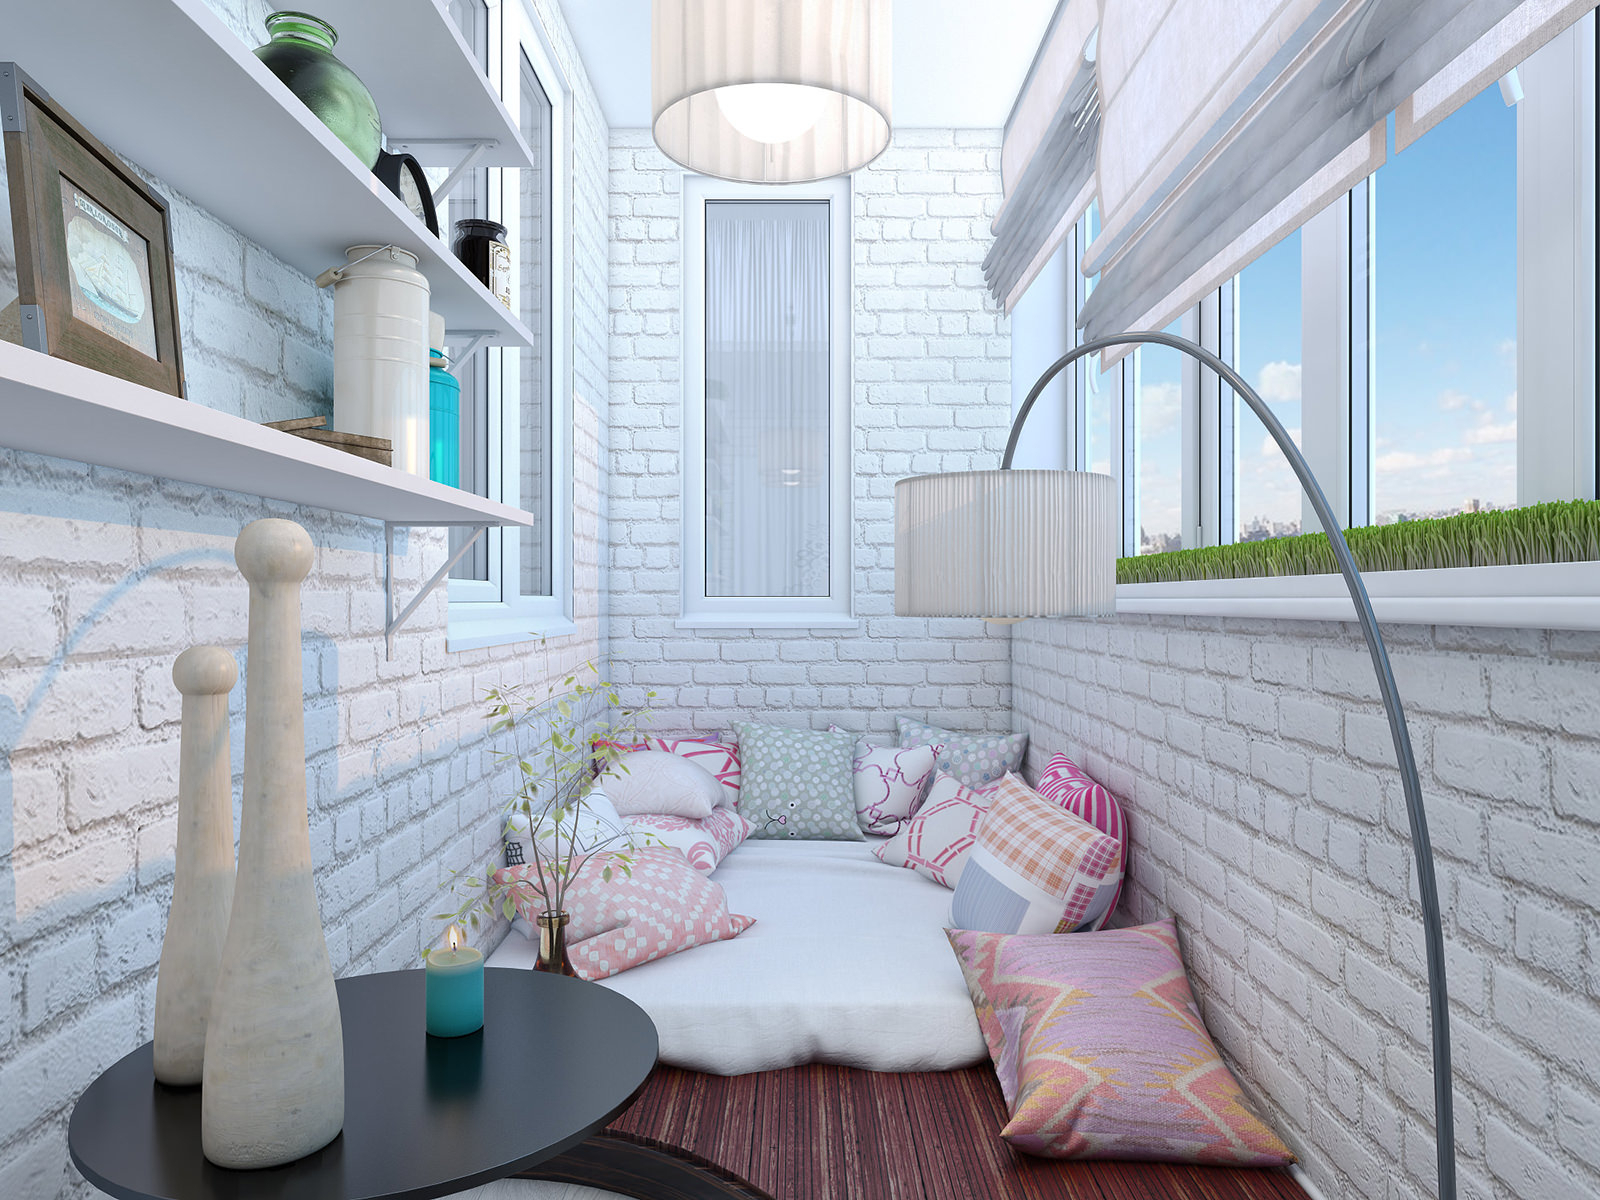 Идеи дизайна маленького балкона и лоджии - hekon.ru